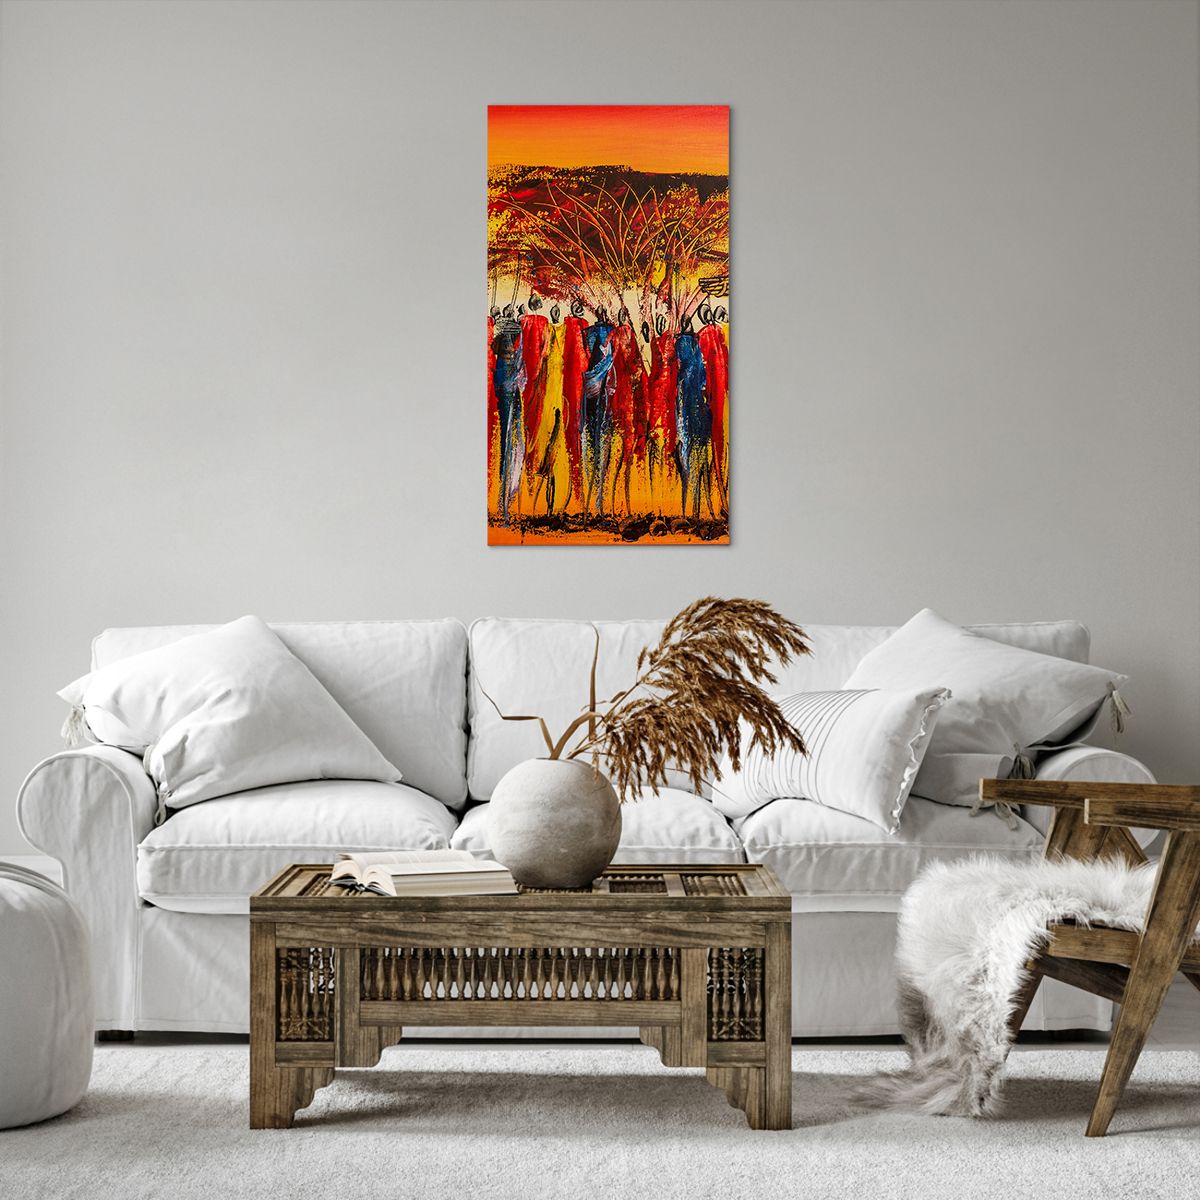 Bild auf Leinwand Kunst, Bild auf Leinwand Personen, Bild auf Leinwand Afrika, Bild auf Leinwand Kenia, Bild auf Leinwand Baobab